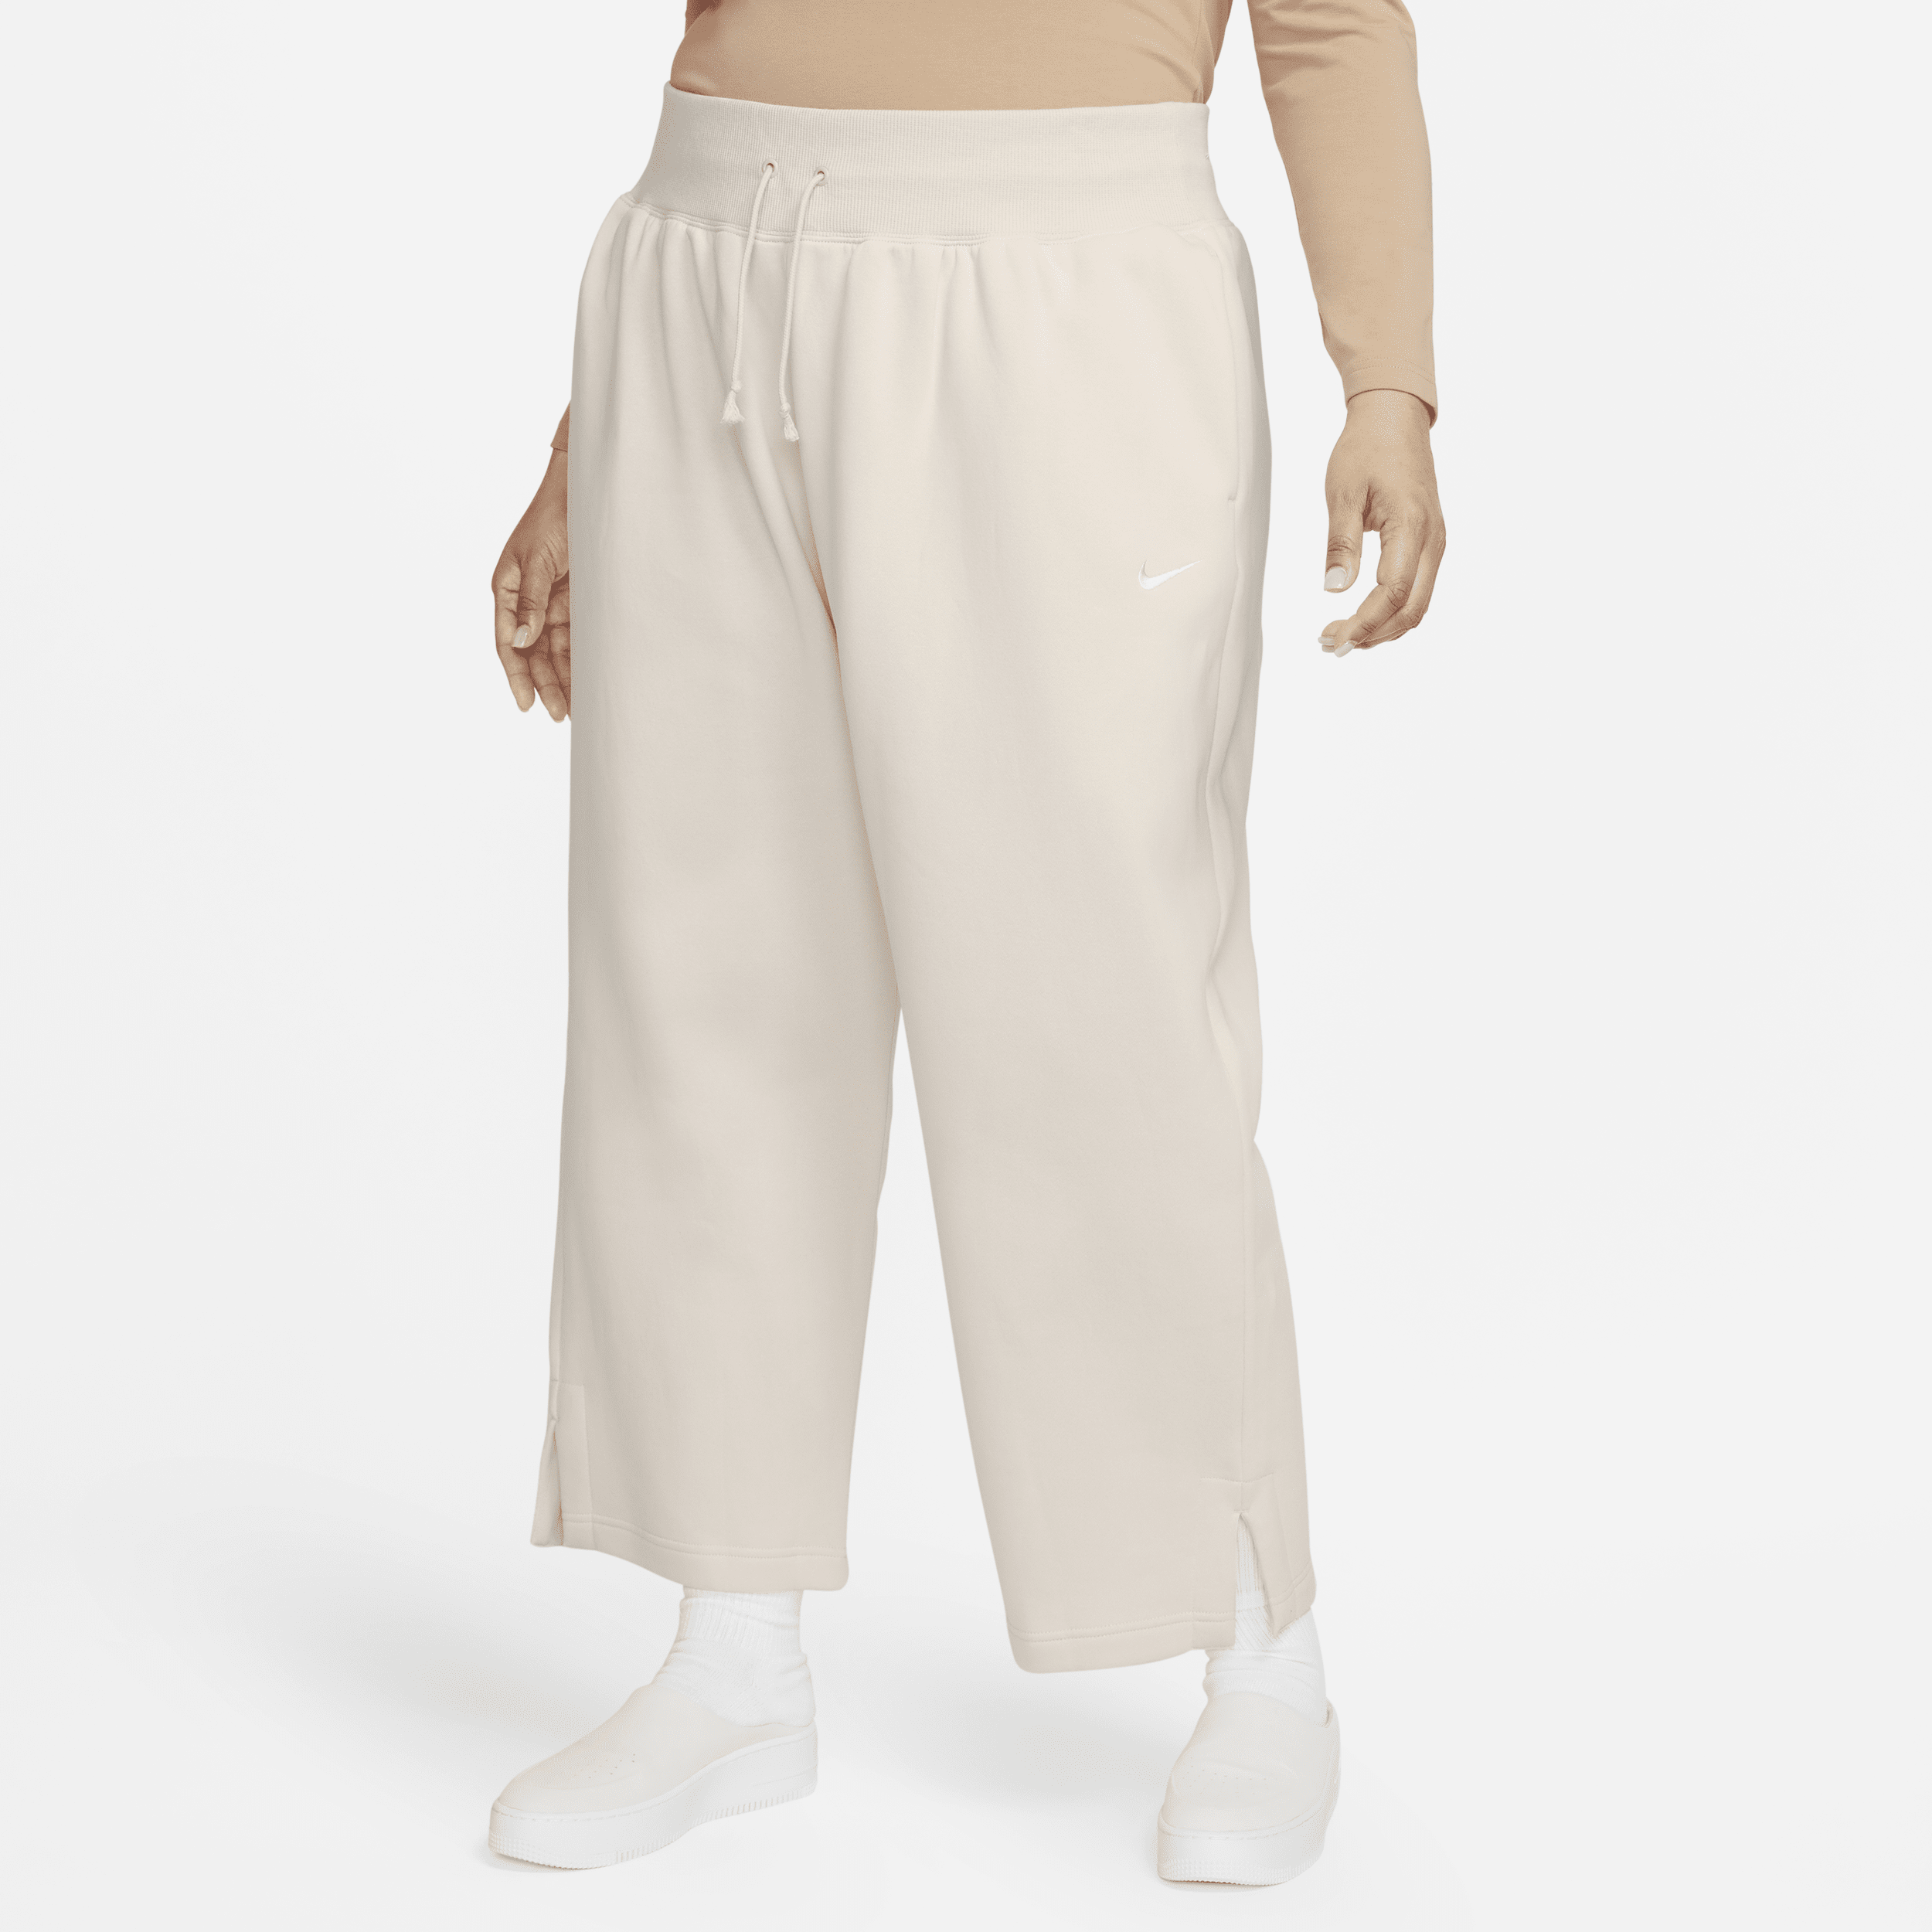 Nike Sportswear Phoenix Fleece Joggingbroek met hoge taille en wijde pijpen voor dames (Plus Size) - Bruin